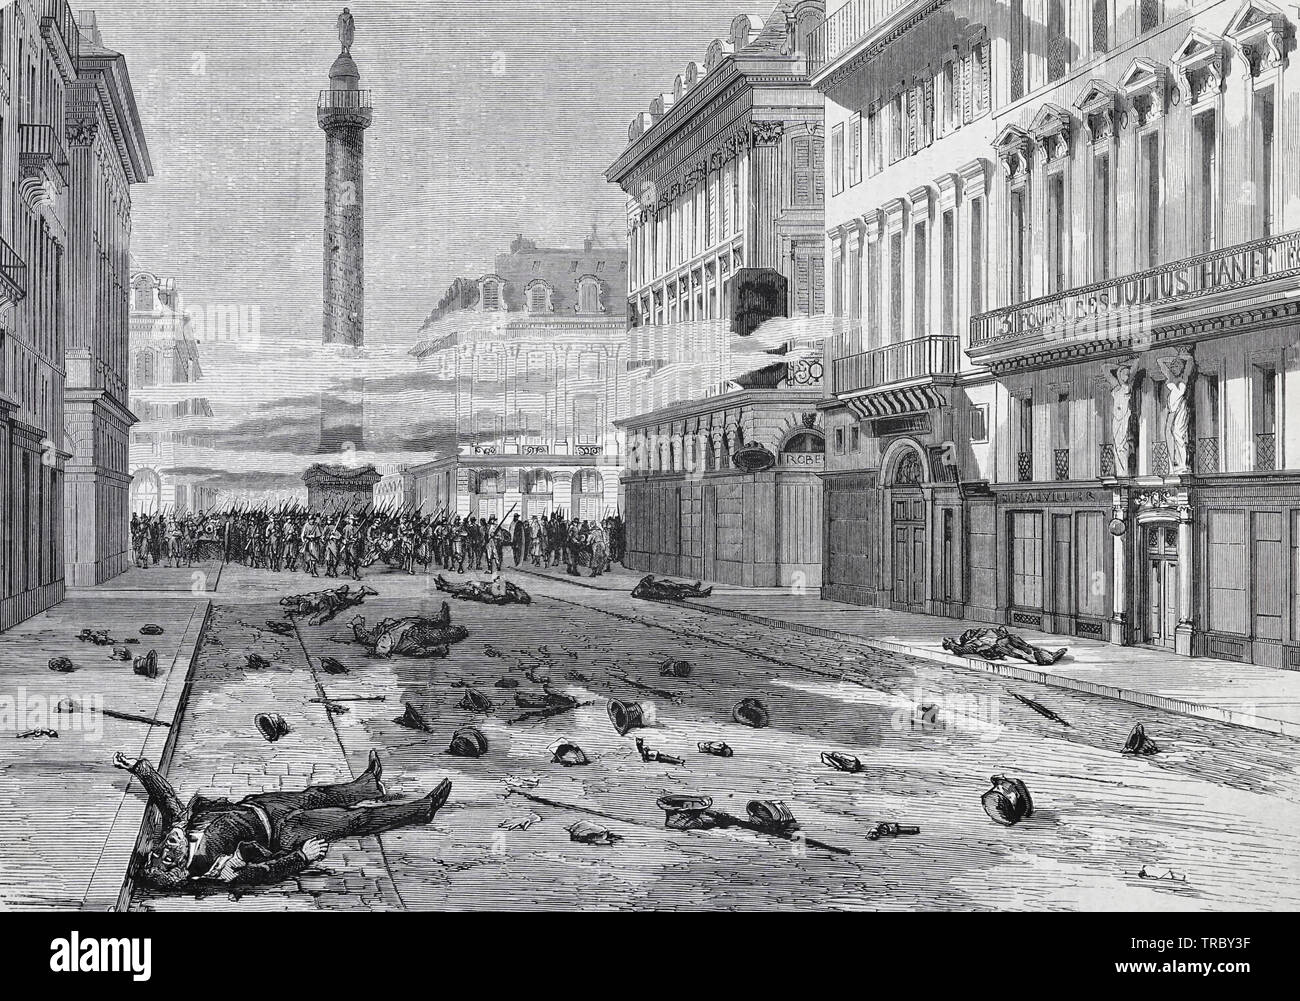 Le tournage de Place Vendôme - l'apparition de la rue de la paix, après la dispersion de la manifestation du 23 mars - Commune de Paris, 1871 Banque D'Images